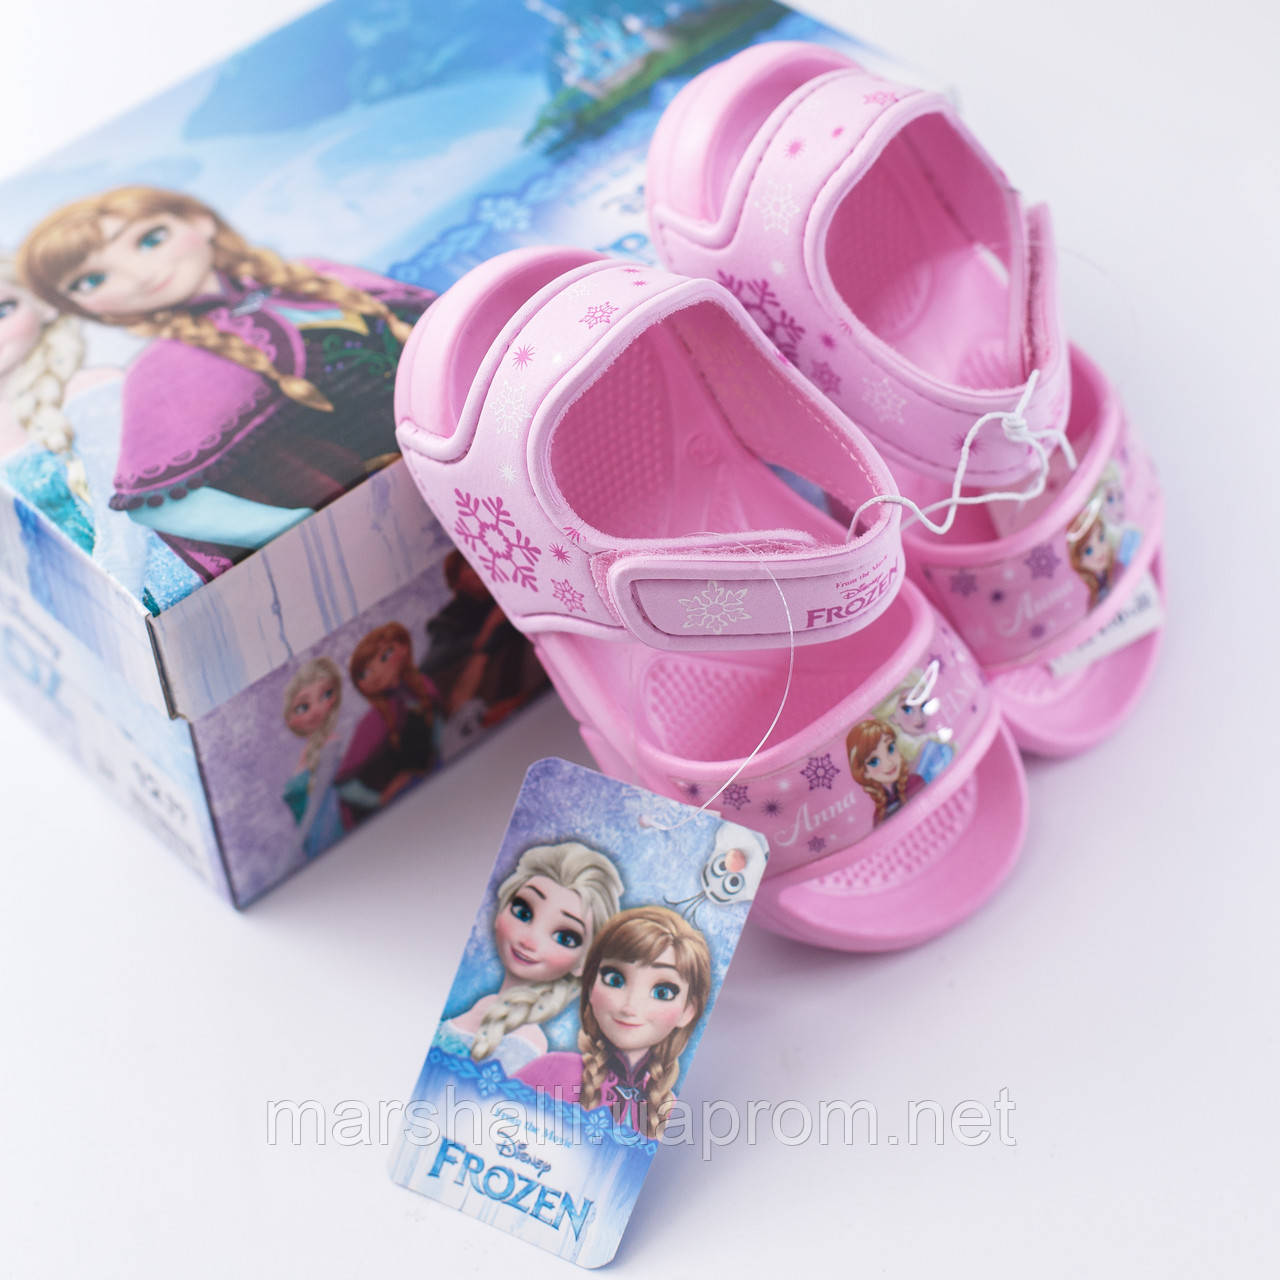 Продам дитячі босоніжки Disney Frozen оригінал Німеччина